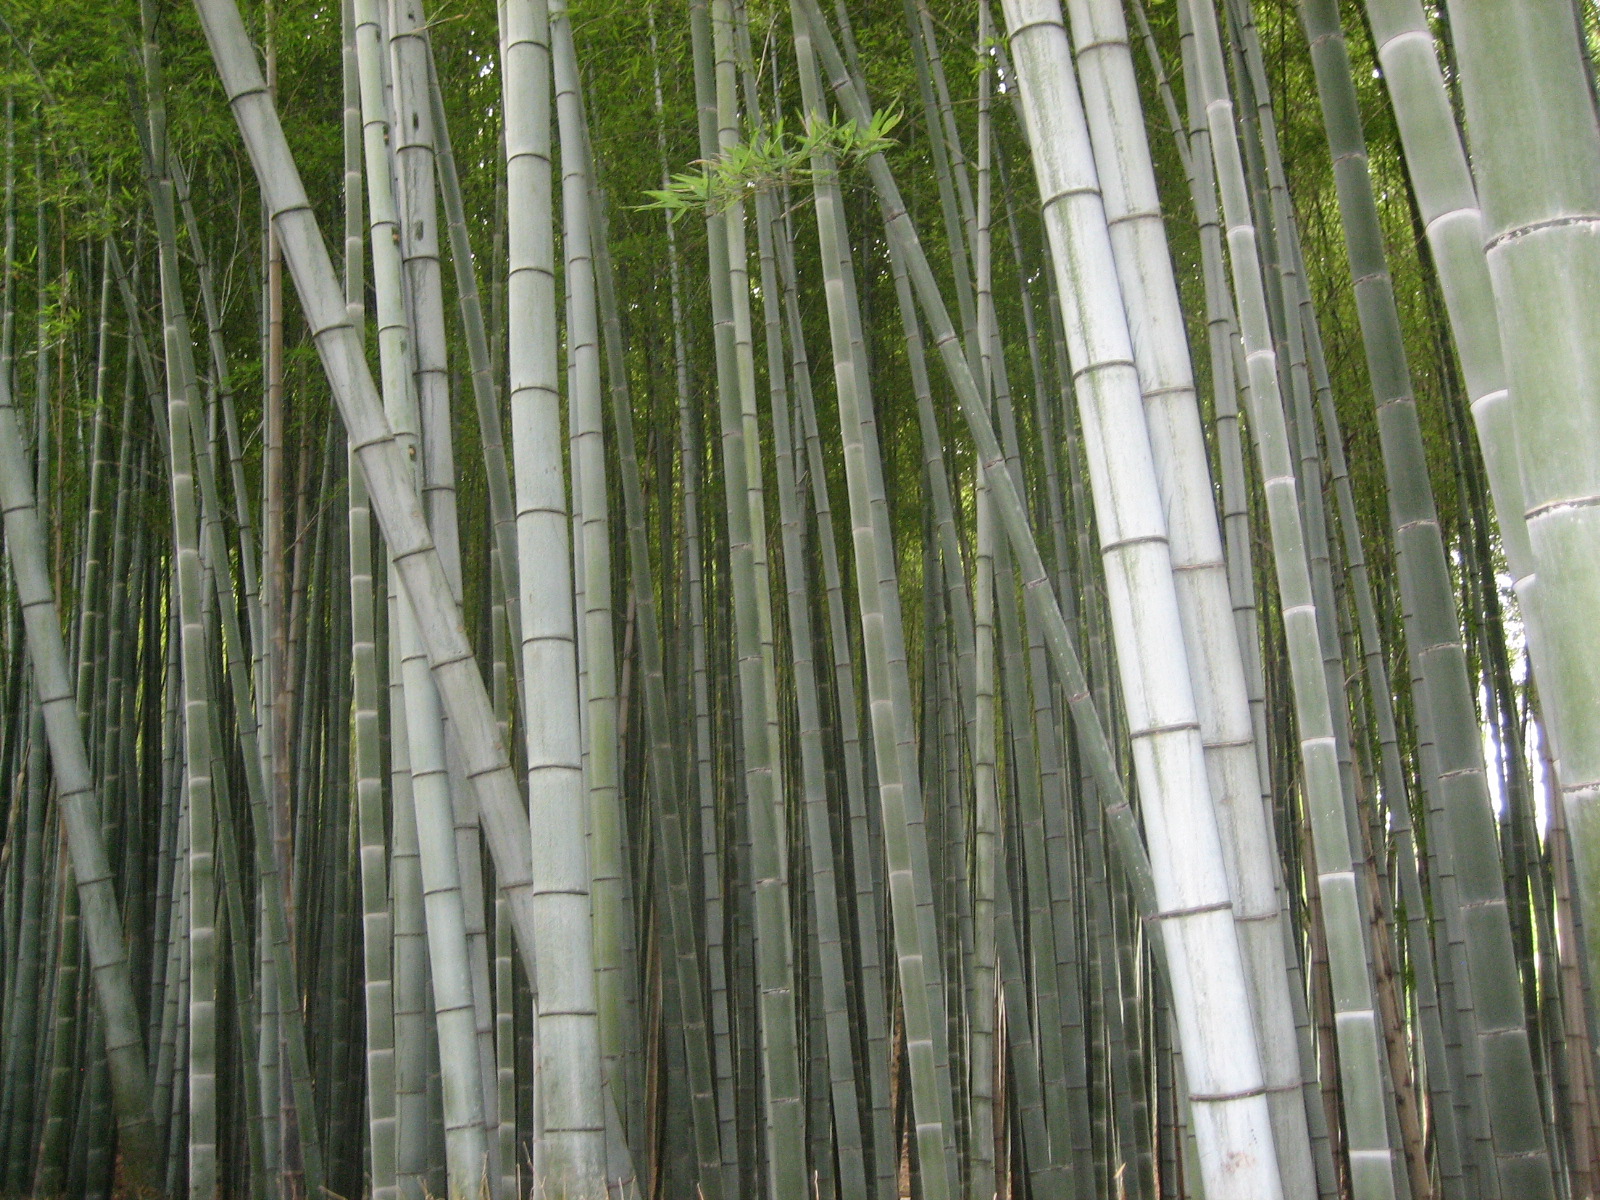 [bambootrunks.JPG]